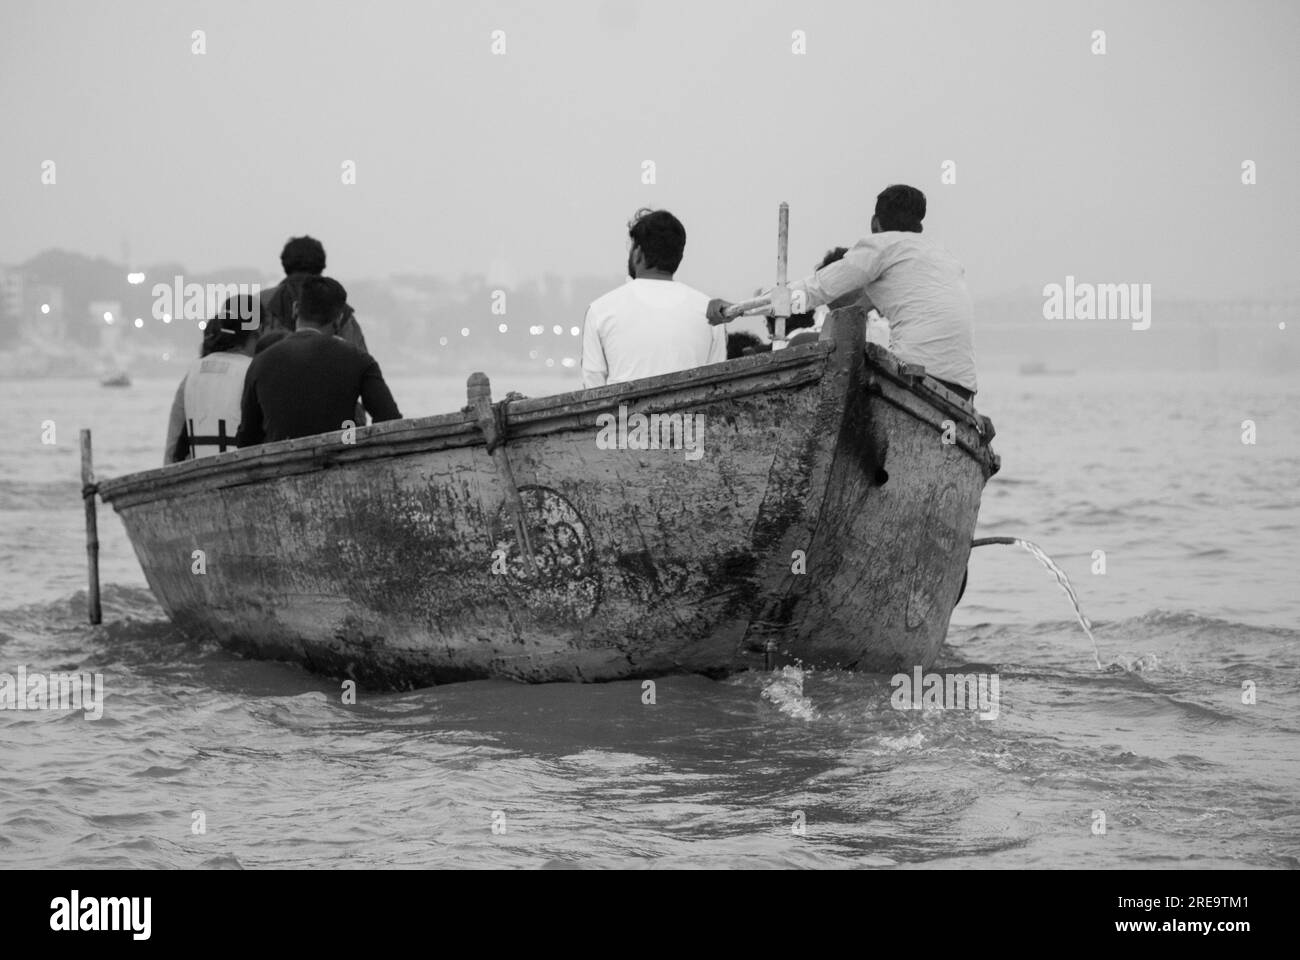 Des gens dans un bateau sur le gange à Veranassi. Les gens préparent des bûchers funéraires à Varanasi sur les rives du Gange, qui est l'une des plus anciennes villes continuellement habitées dans le monde, et la plus sainte des sept villes sacrées de l'hindouisme. Chaque jour, à Manikarnika Ghat, le ghat de crémation le plus grand et le plus propice, environ 100 corps sont incinérés sur des bûchers en bois le long du bord de la rivière. On dit que la flamme éternelle qui alimente les feux brûle depuis des siècles maintenant. Varanasi, Inde. Banque D'Images